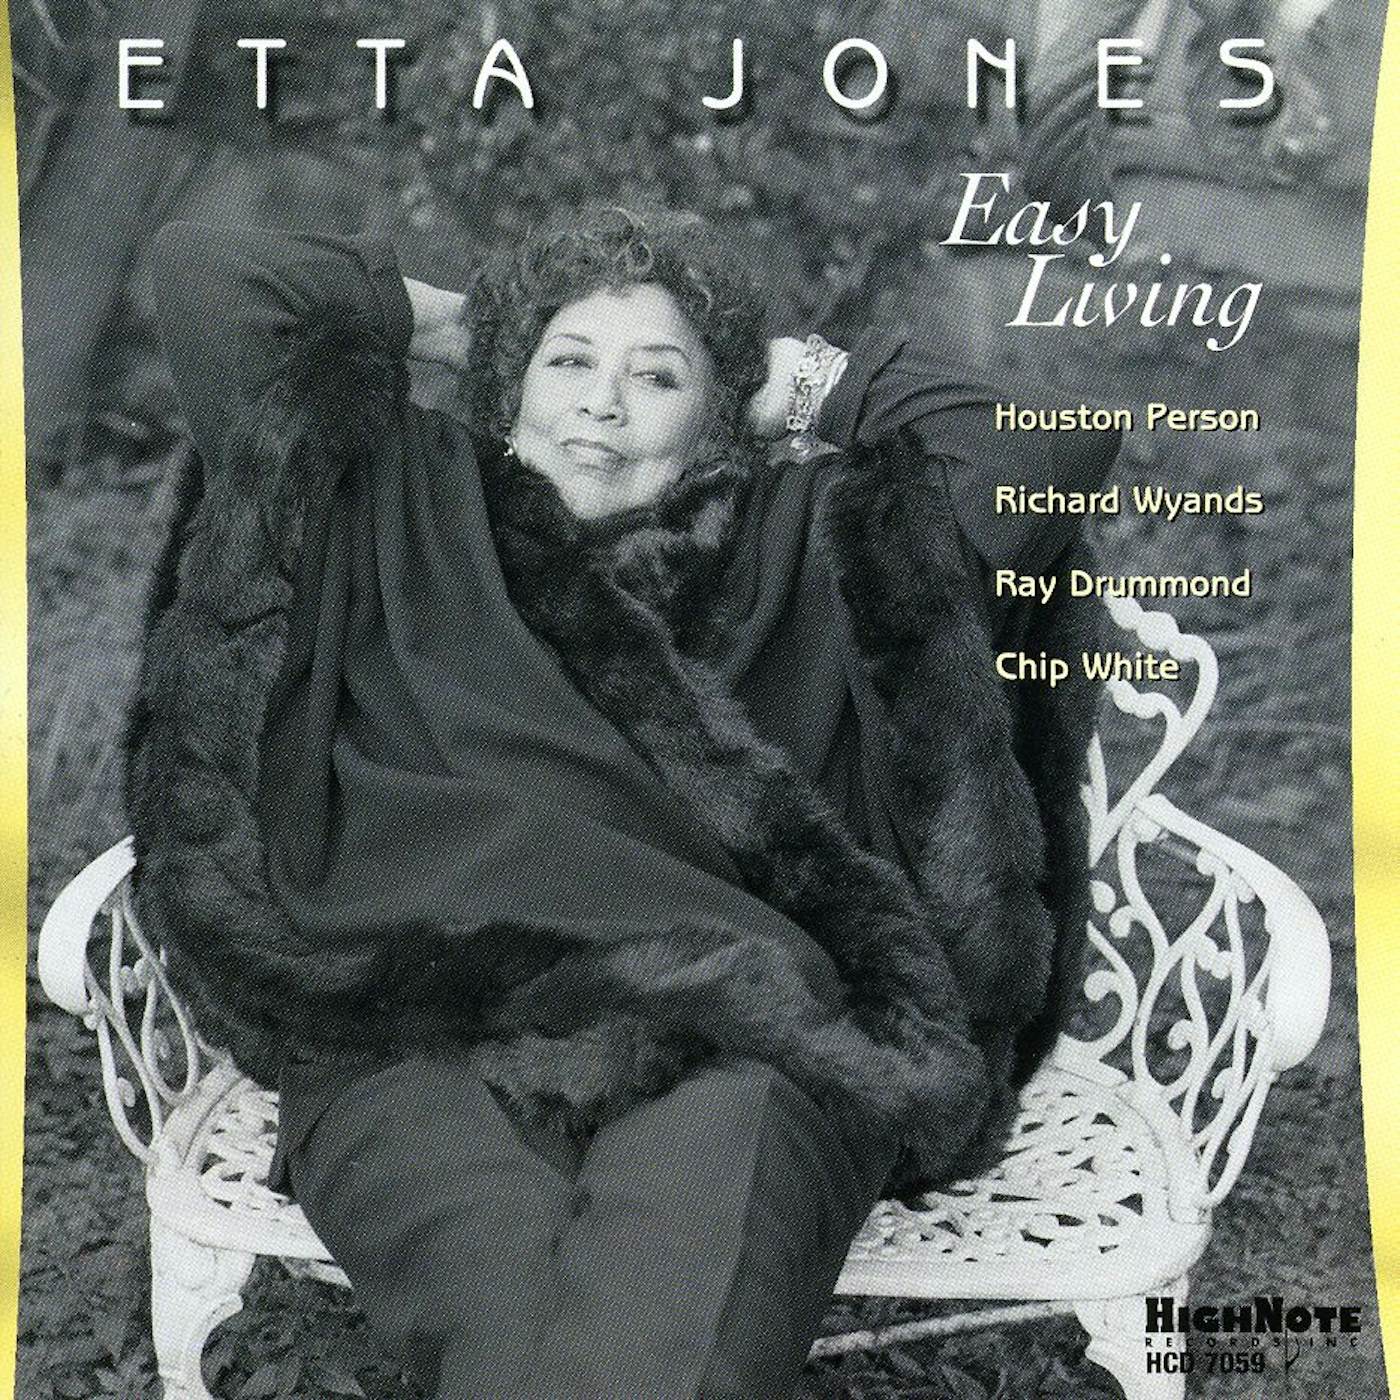 Etta Jones EASY LIVING CD